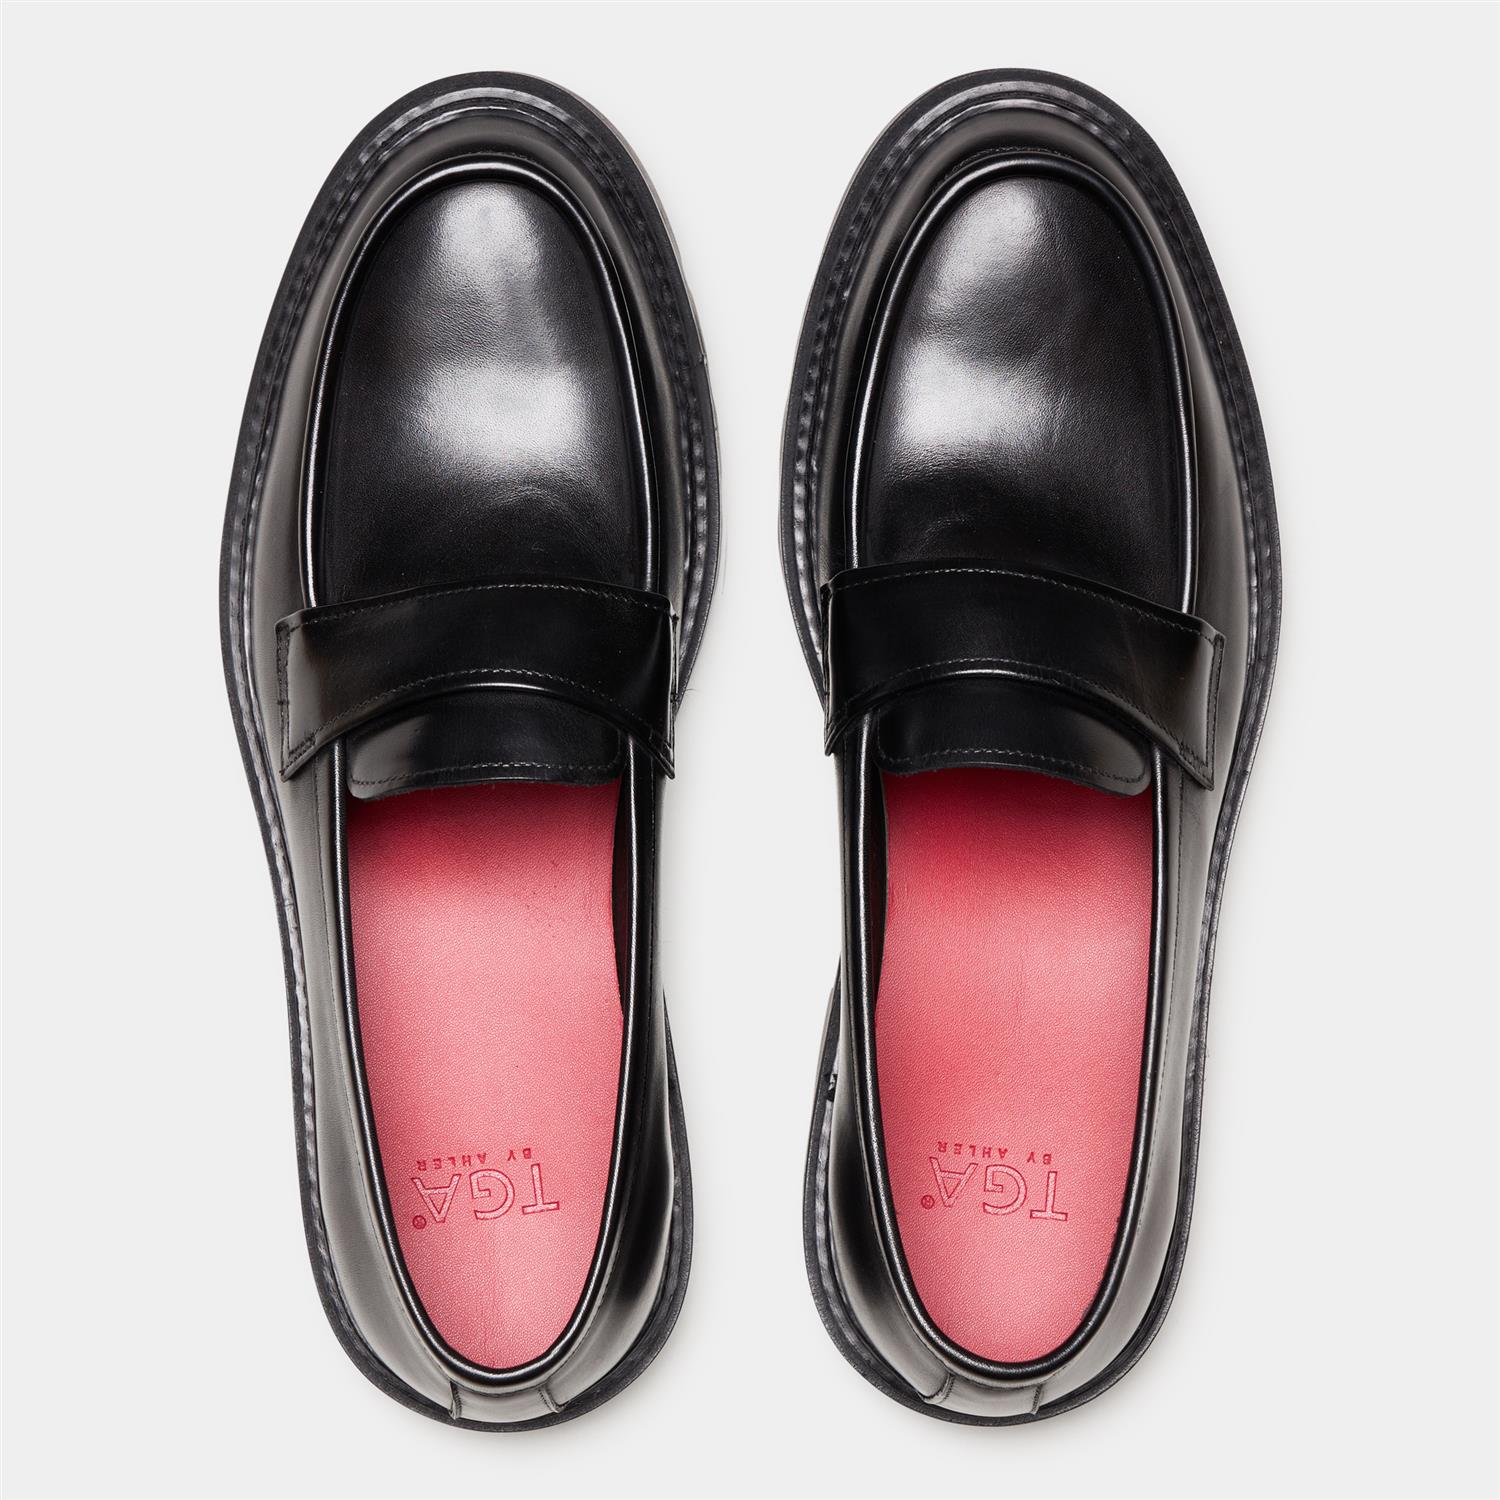 T23-4001 Loafer Shoe Black